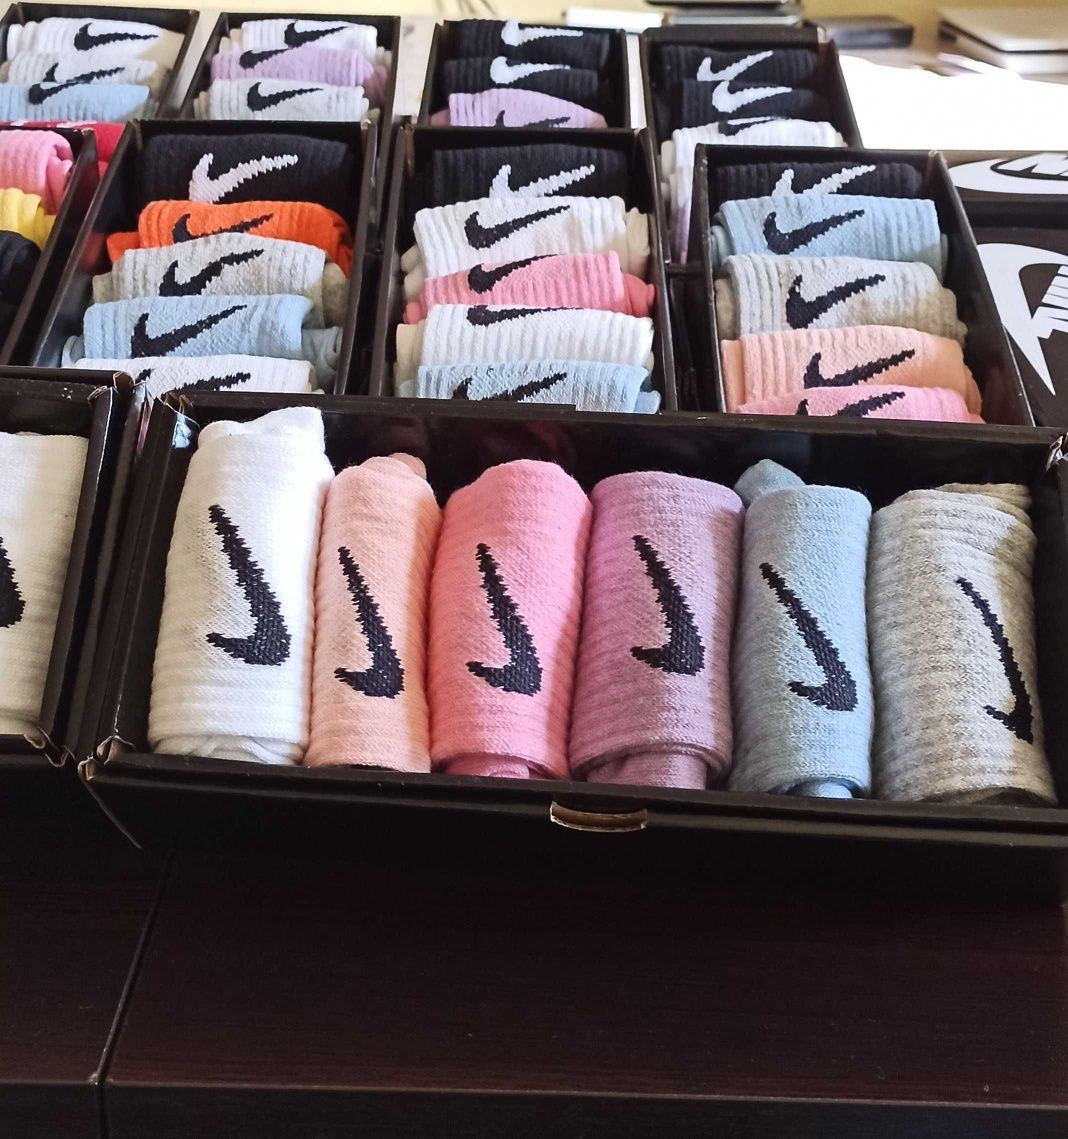 Чорапи Nike, Nike Air max / Adidas 25лв